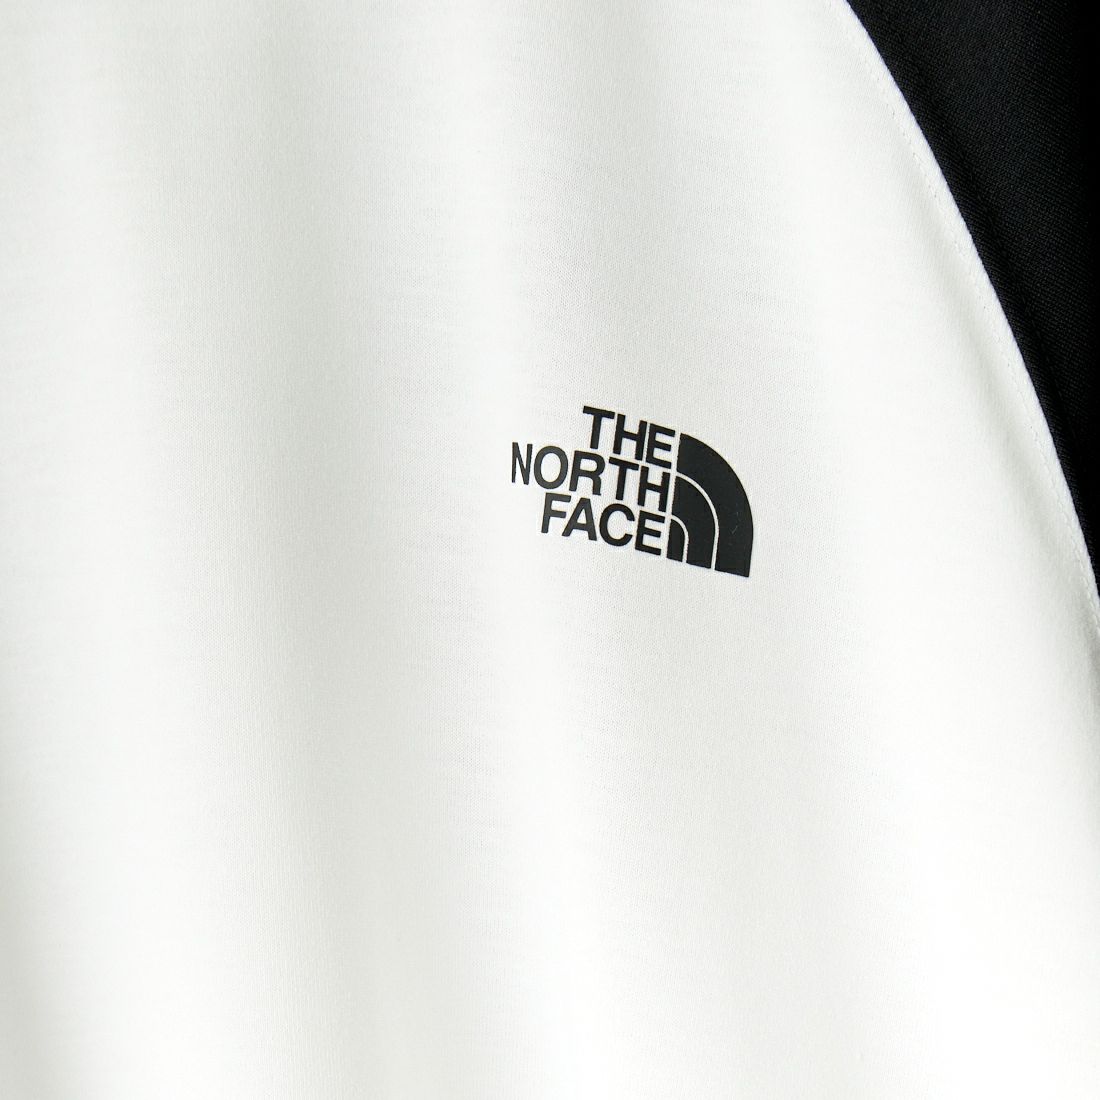 THE NORTH FACE [ザ ノースフェイス] クォータースリーブベースボールTシャツ [NT32476] K